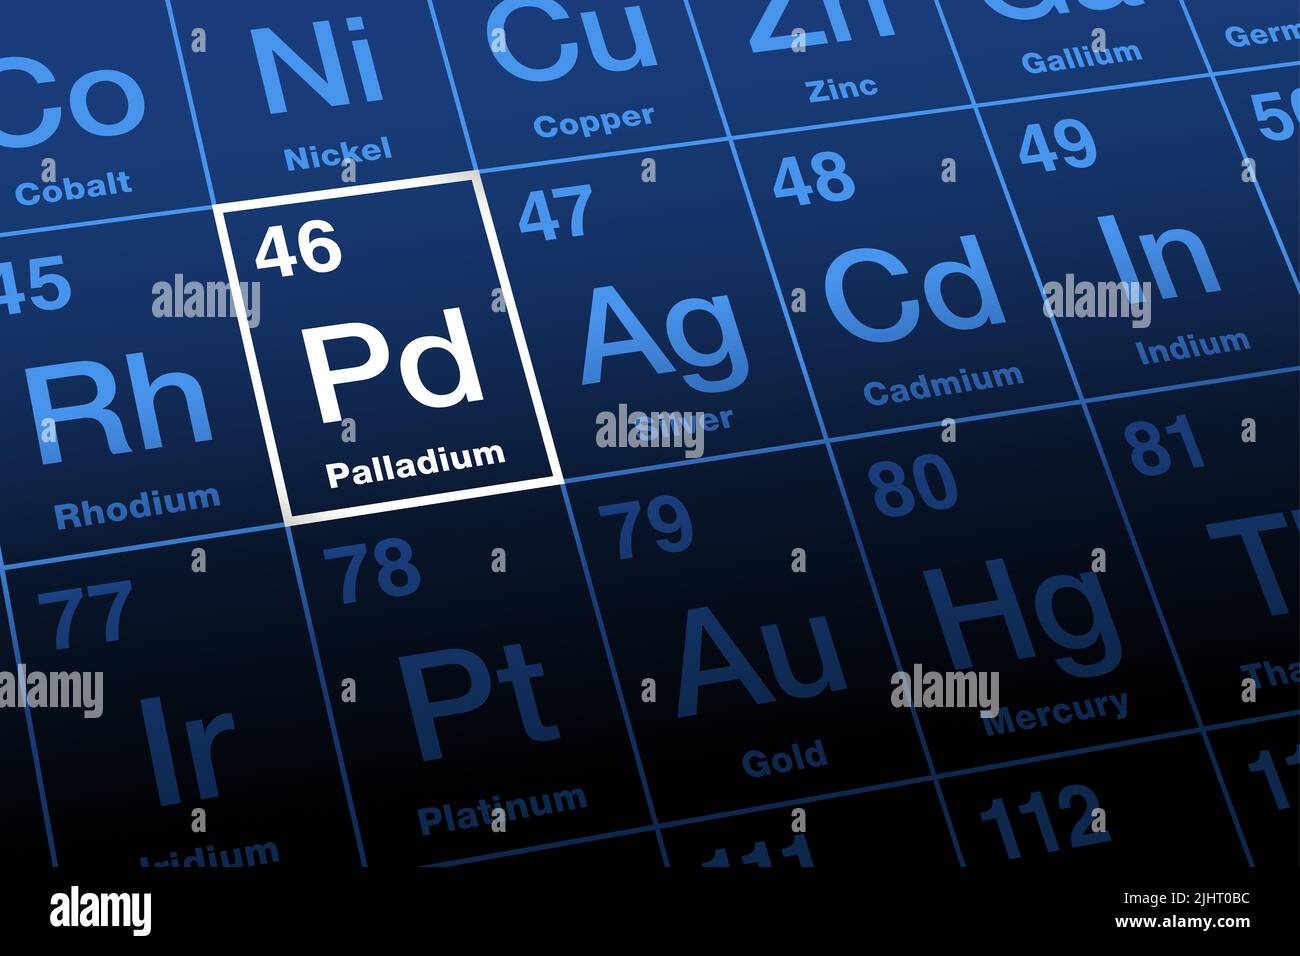 Palladio su tavola periodica degli elementi. Metallo raro, che prende il nome dall'asteroide Pallas, con il simbolo dell'elemento Pd e il numero atomico 46. Foto Stock